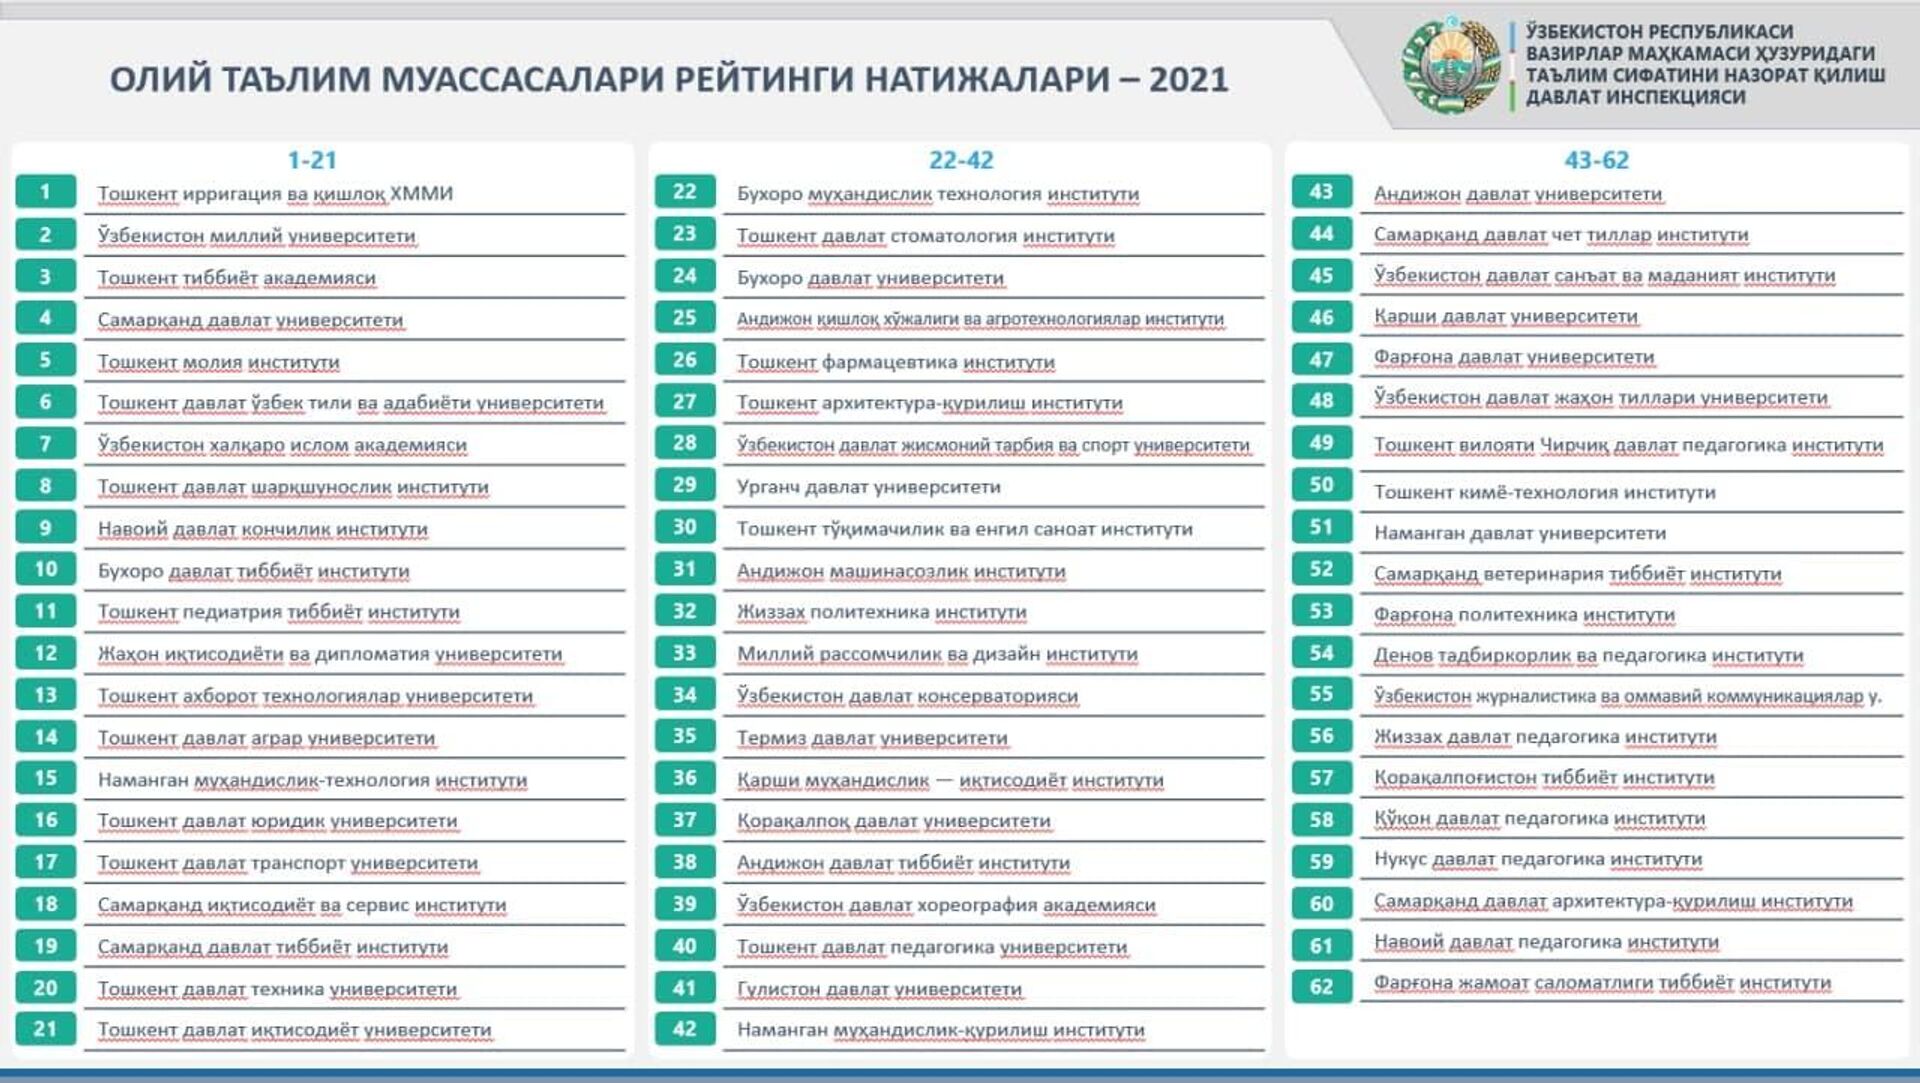 ОТМлар рейтинги 2021 - Sputnik Ўзбекистон, 1920, 04.11.2021